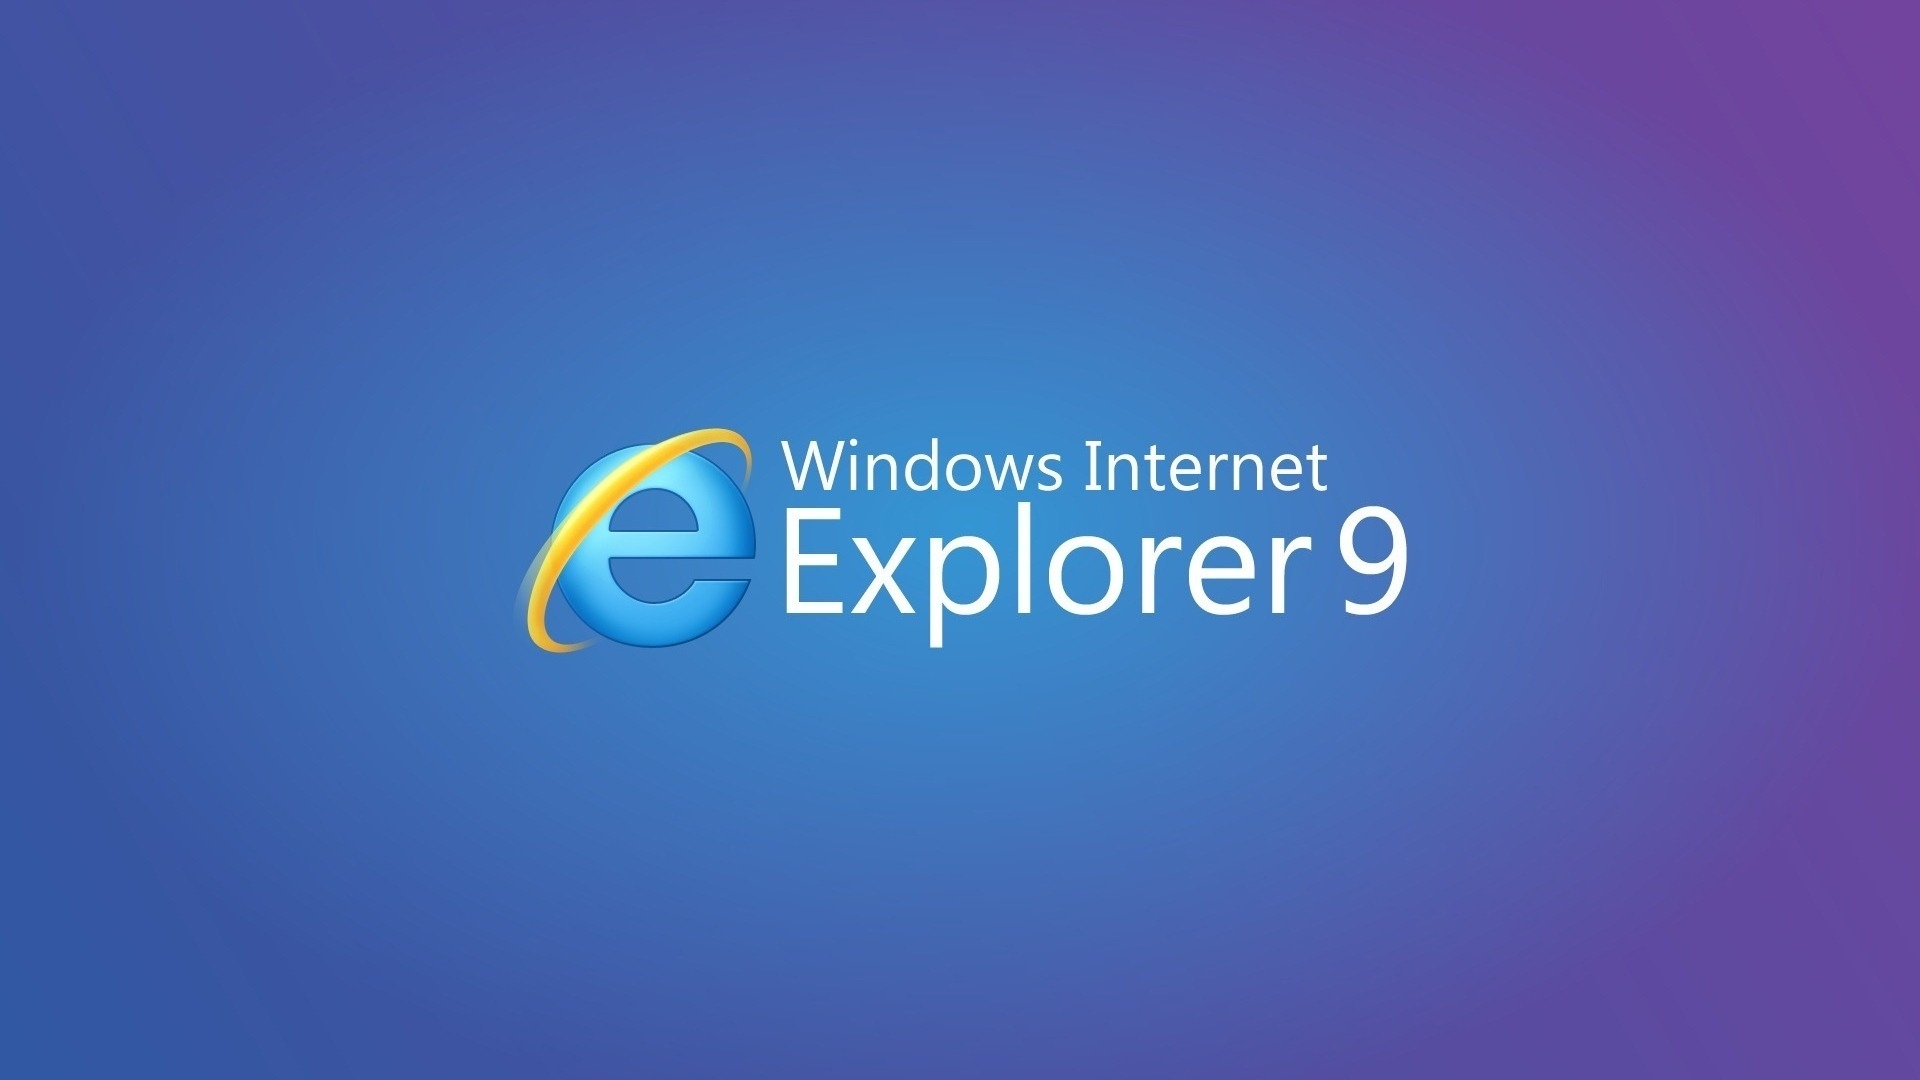 Internet Explorer 9 for 1920 x 1080 HDTV 1080p resolution